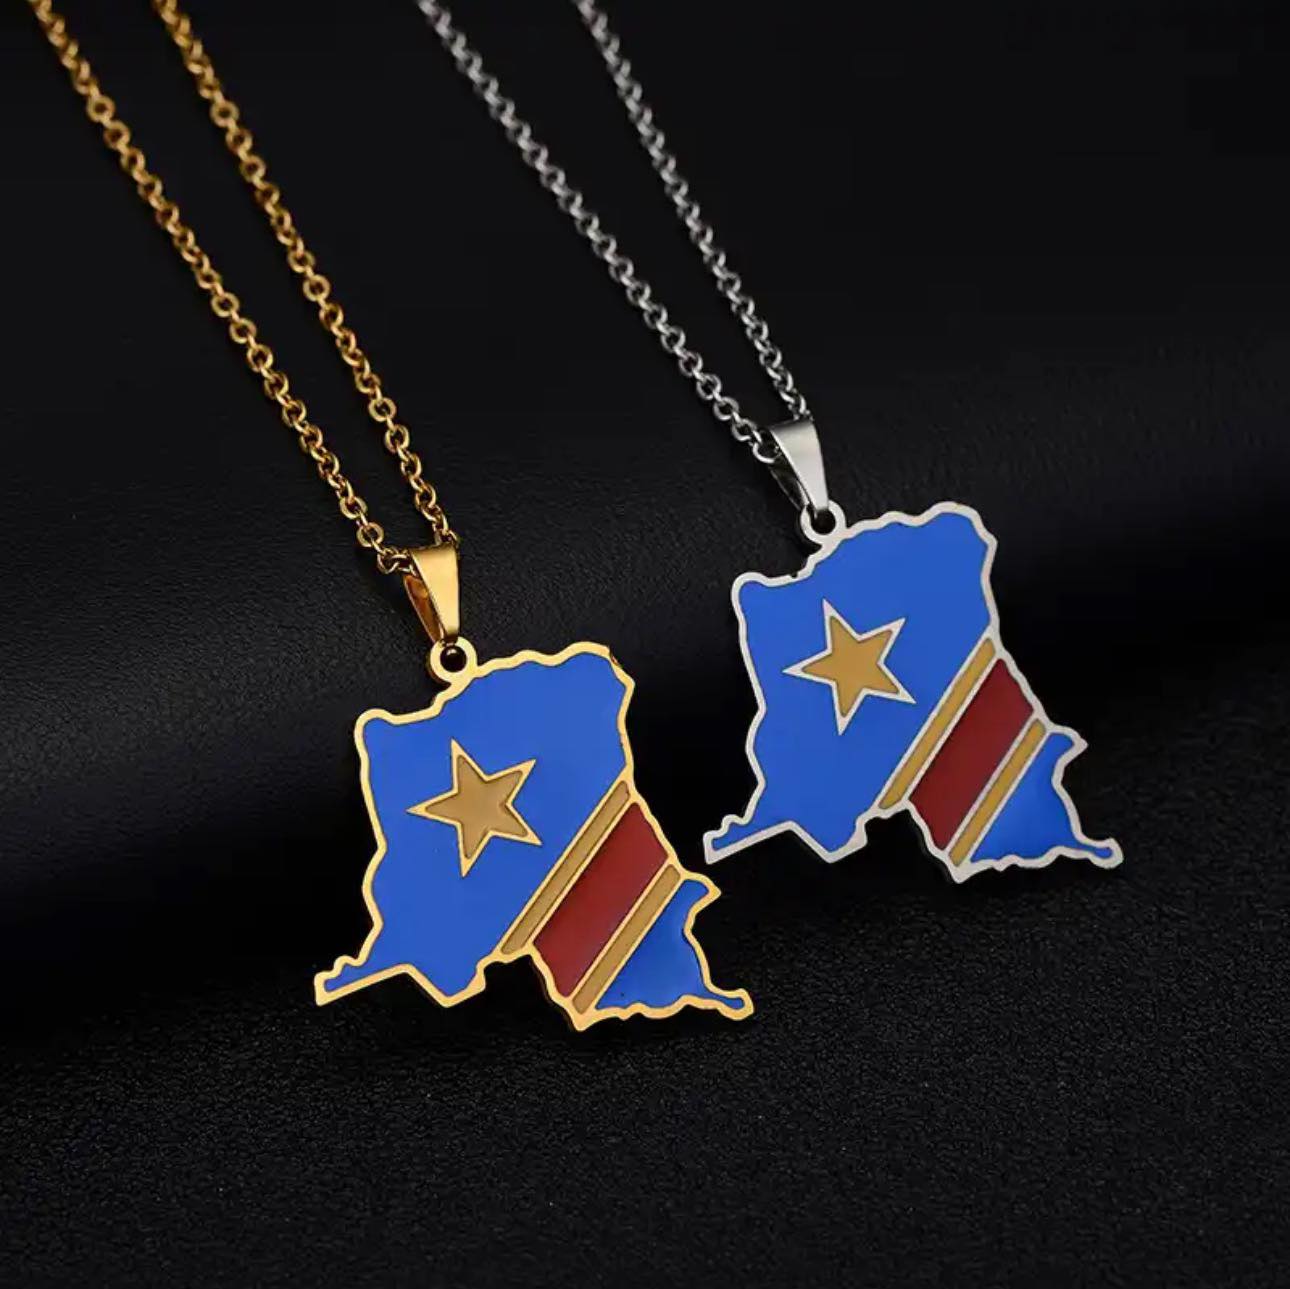 Democratic Republic Of Congo Flag Necklace